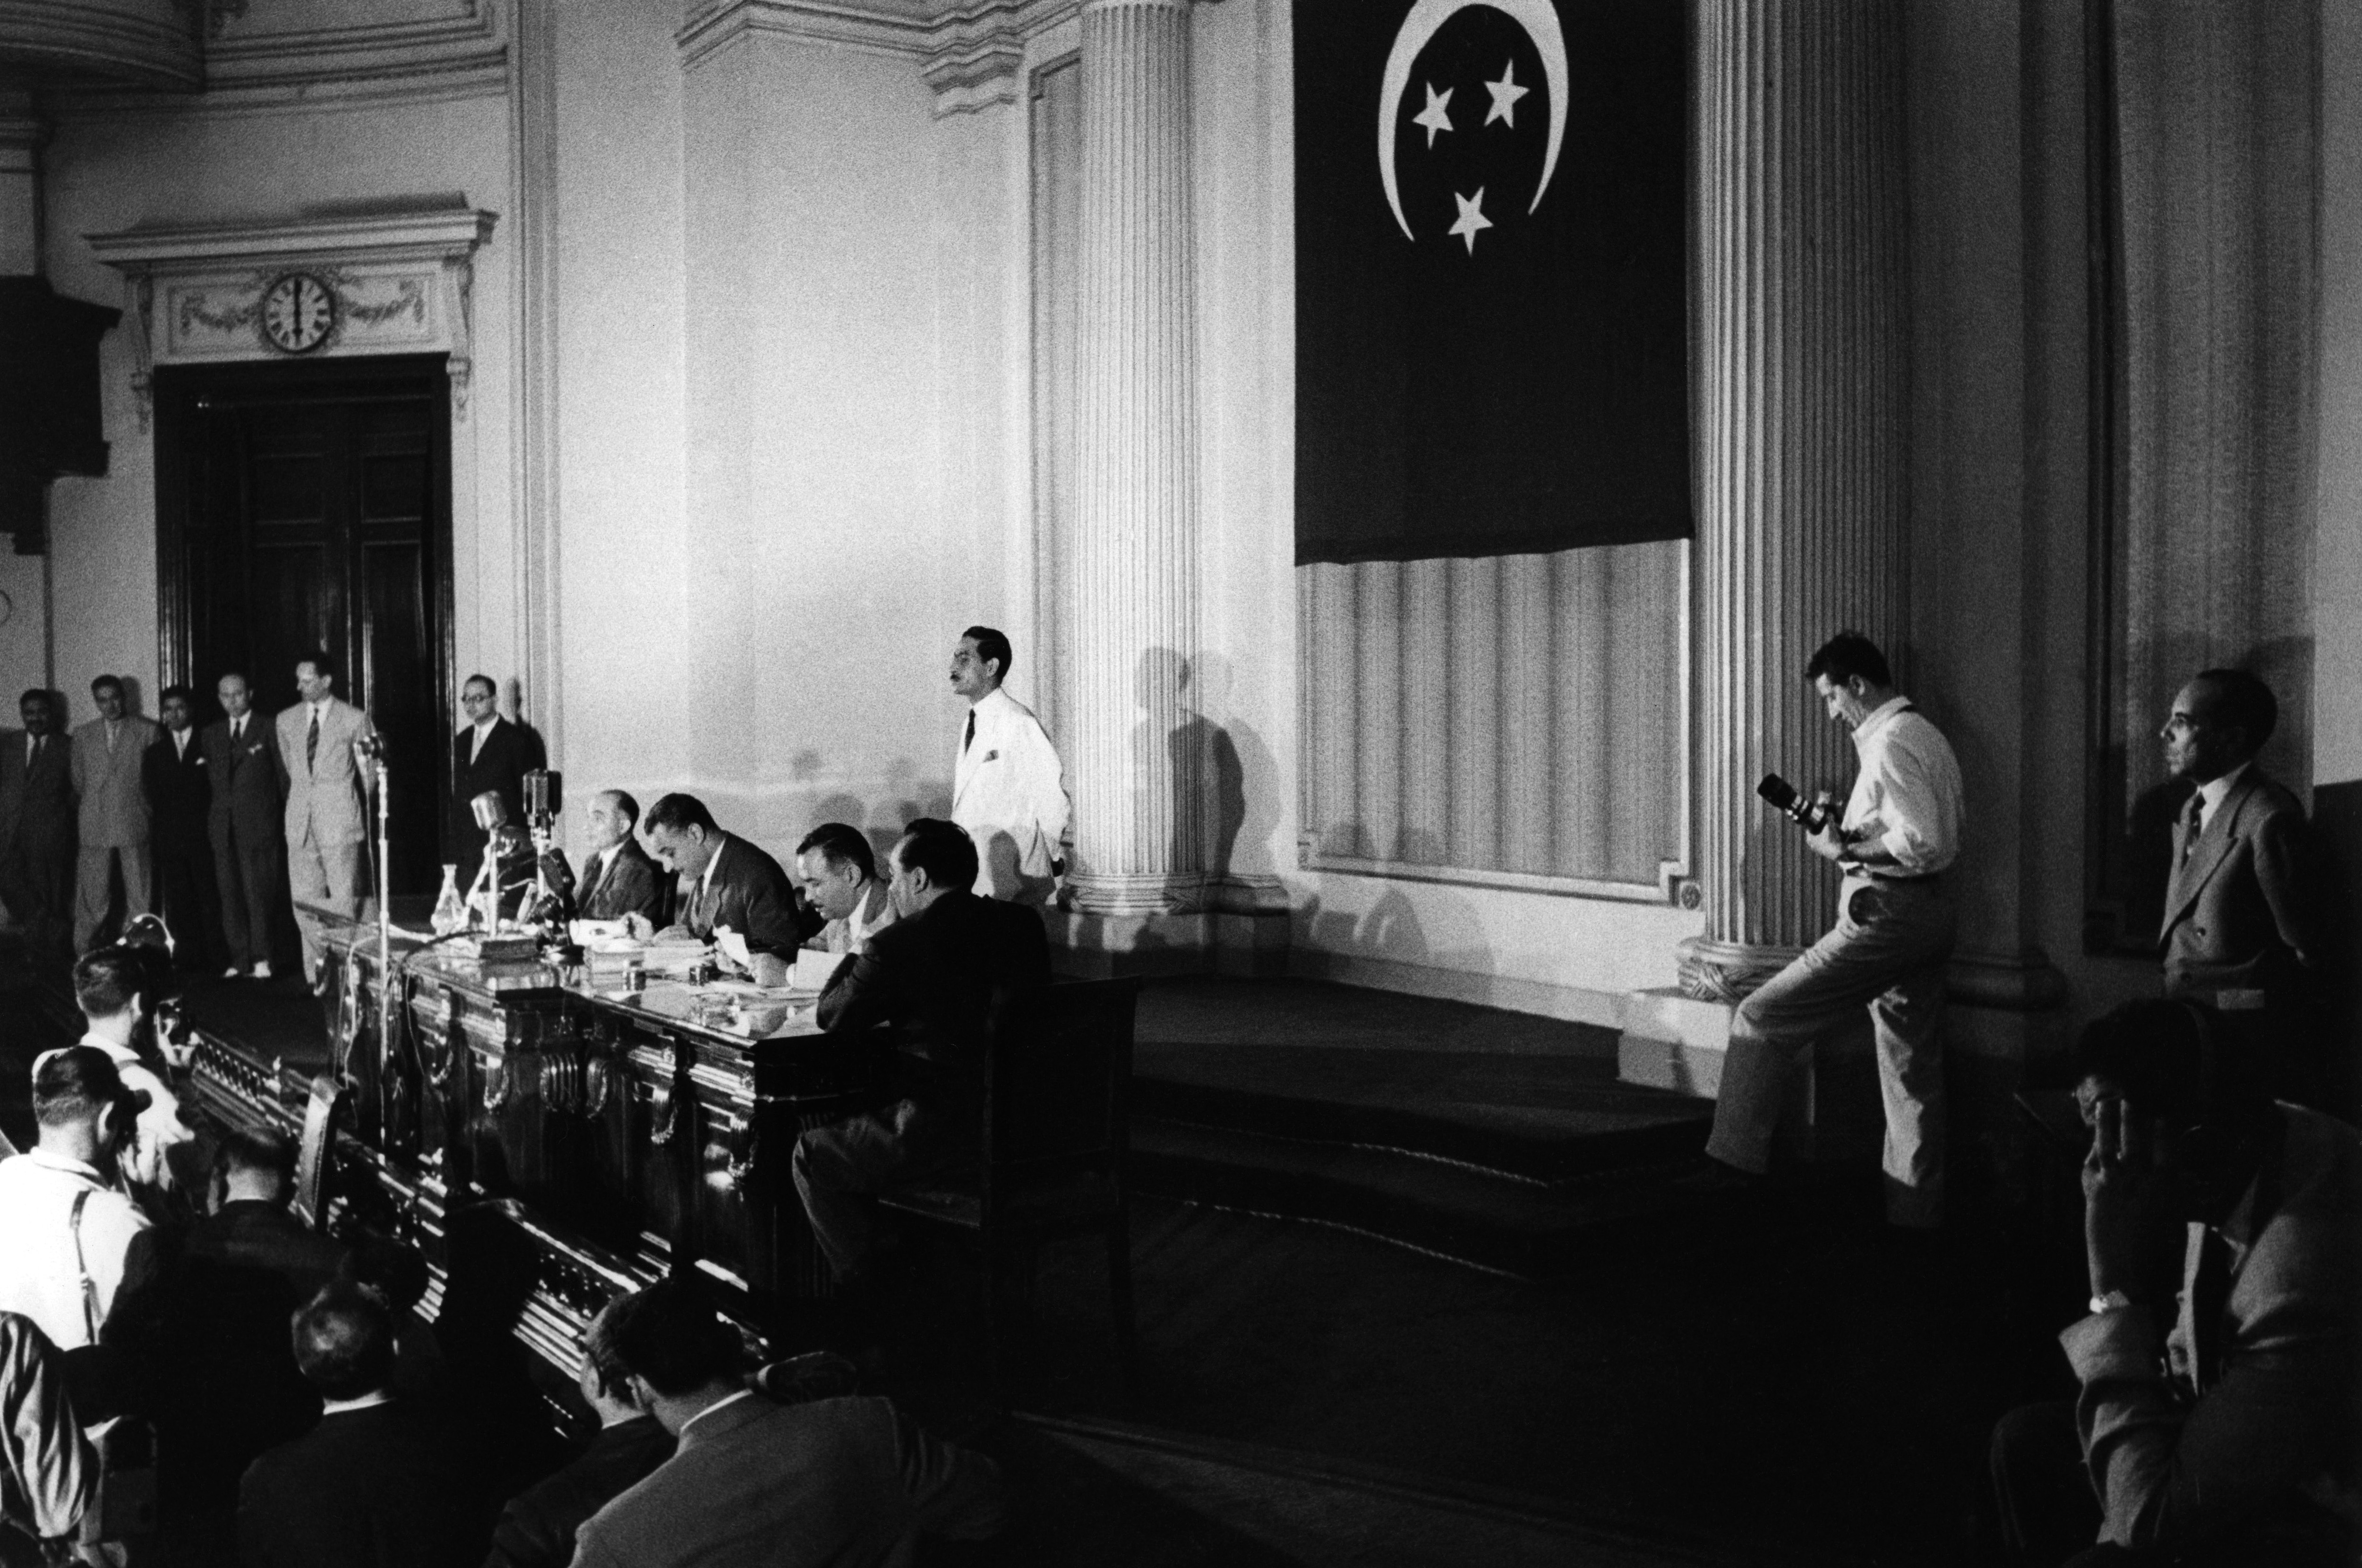 La conferenza stampa del presidente egiziano Nasser del 26 luglio 1956, in cui annuncia la nazionalizzazione della Compagnia anglo-francese che amministra il Canale di Suez, i cui profitti d’ora in poi, finiranno nelle casse dallo stato. Il controllo del Canale passa di fatto nelle mani dell’Egitto